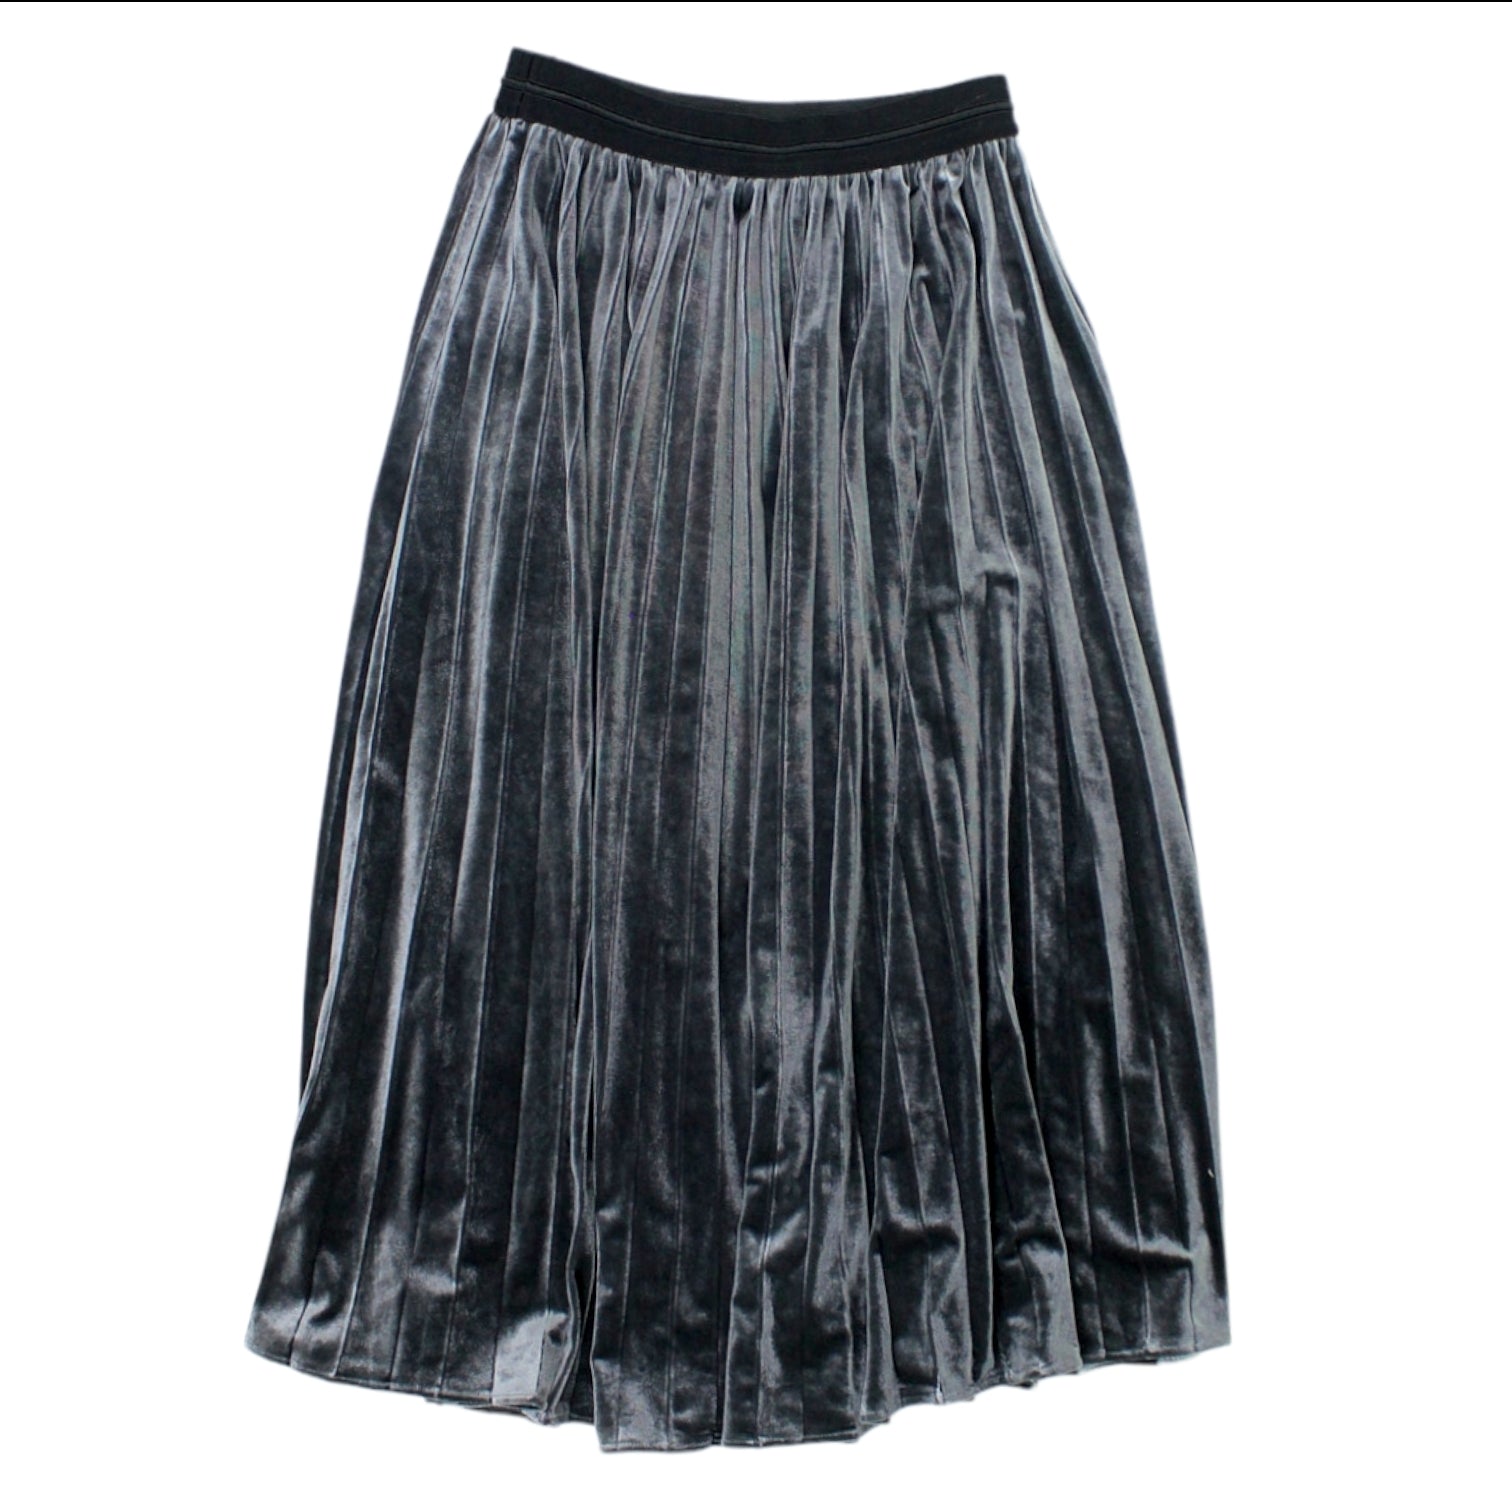 Hush Grey Esme Velour Skirt